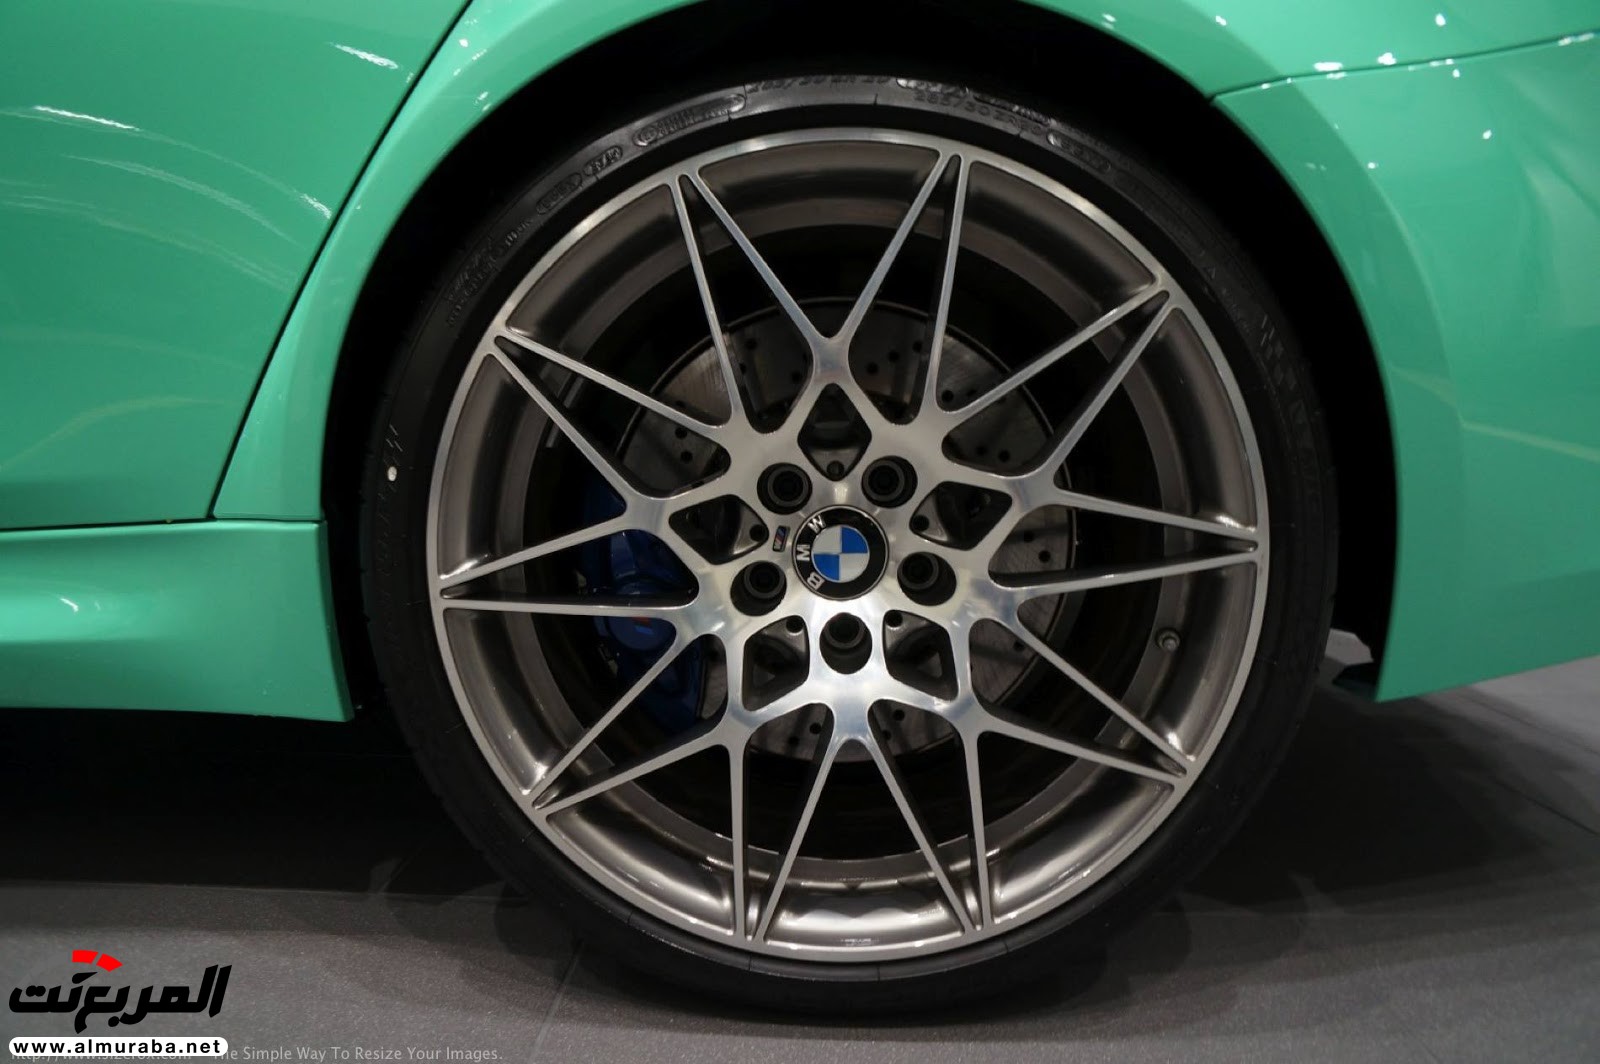 "بالصور" شاهد "بي إم دبليو" F80 M3 الخاصة بطلاء النعناع الأخضر BMW 83